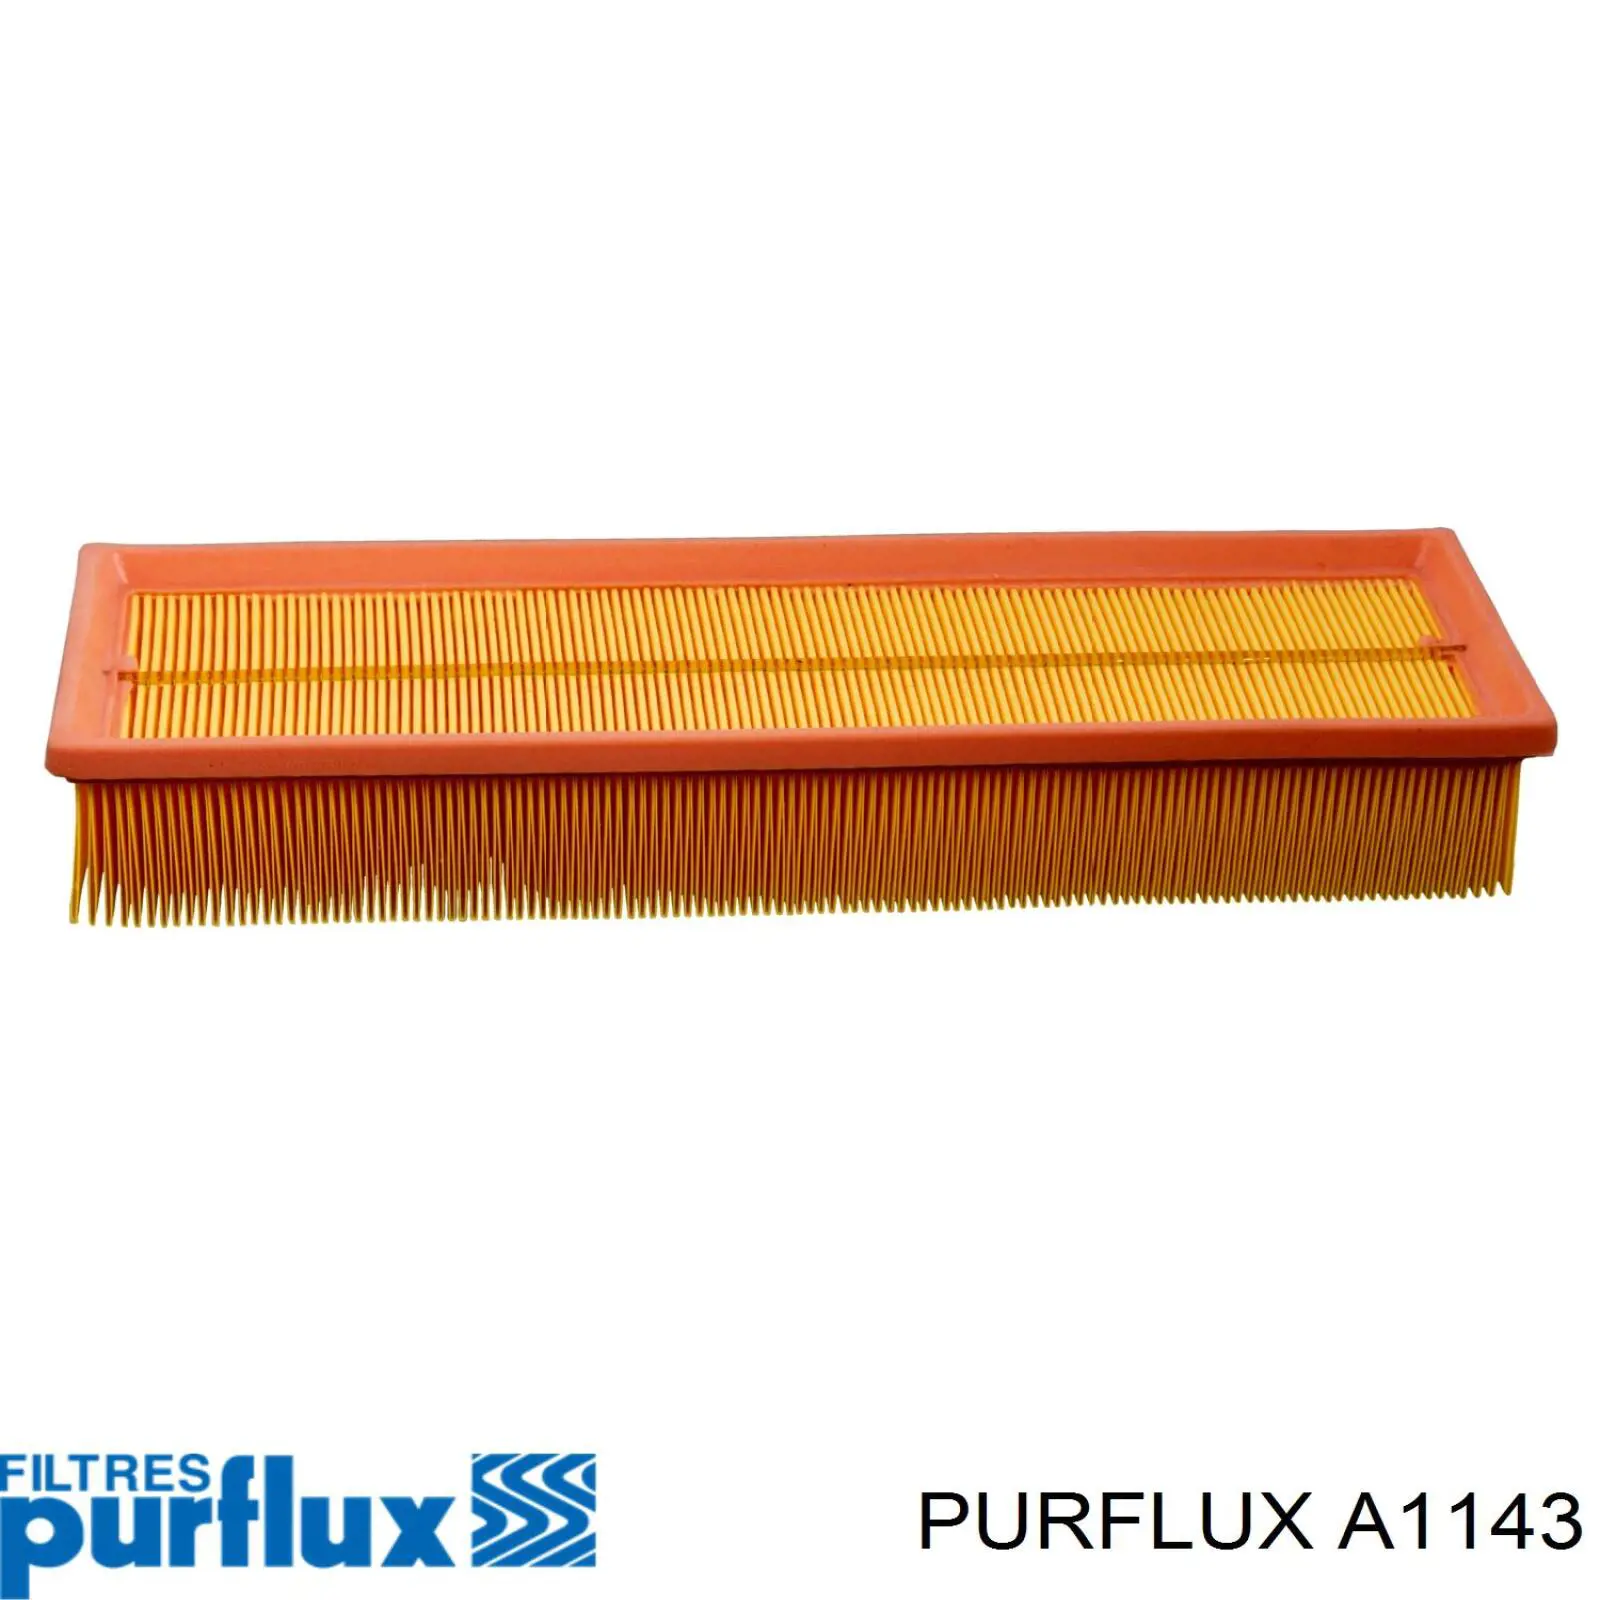 A1143 Purflux filtro de aire